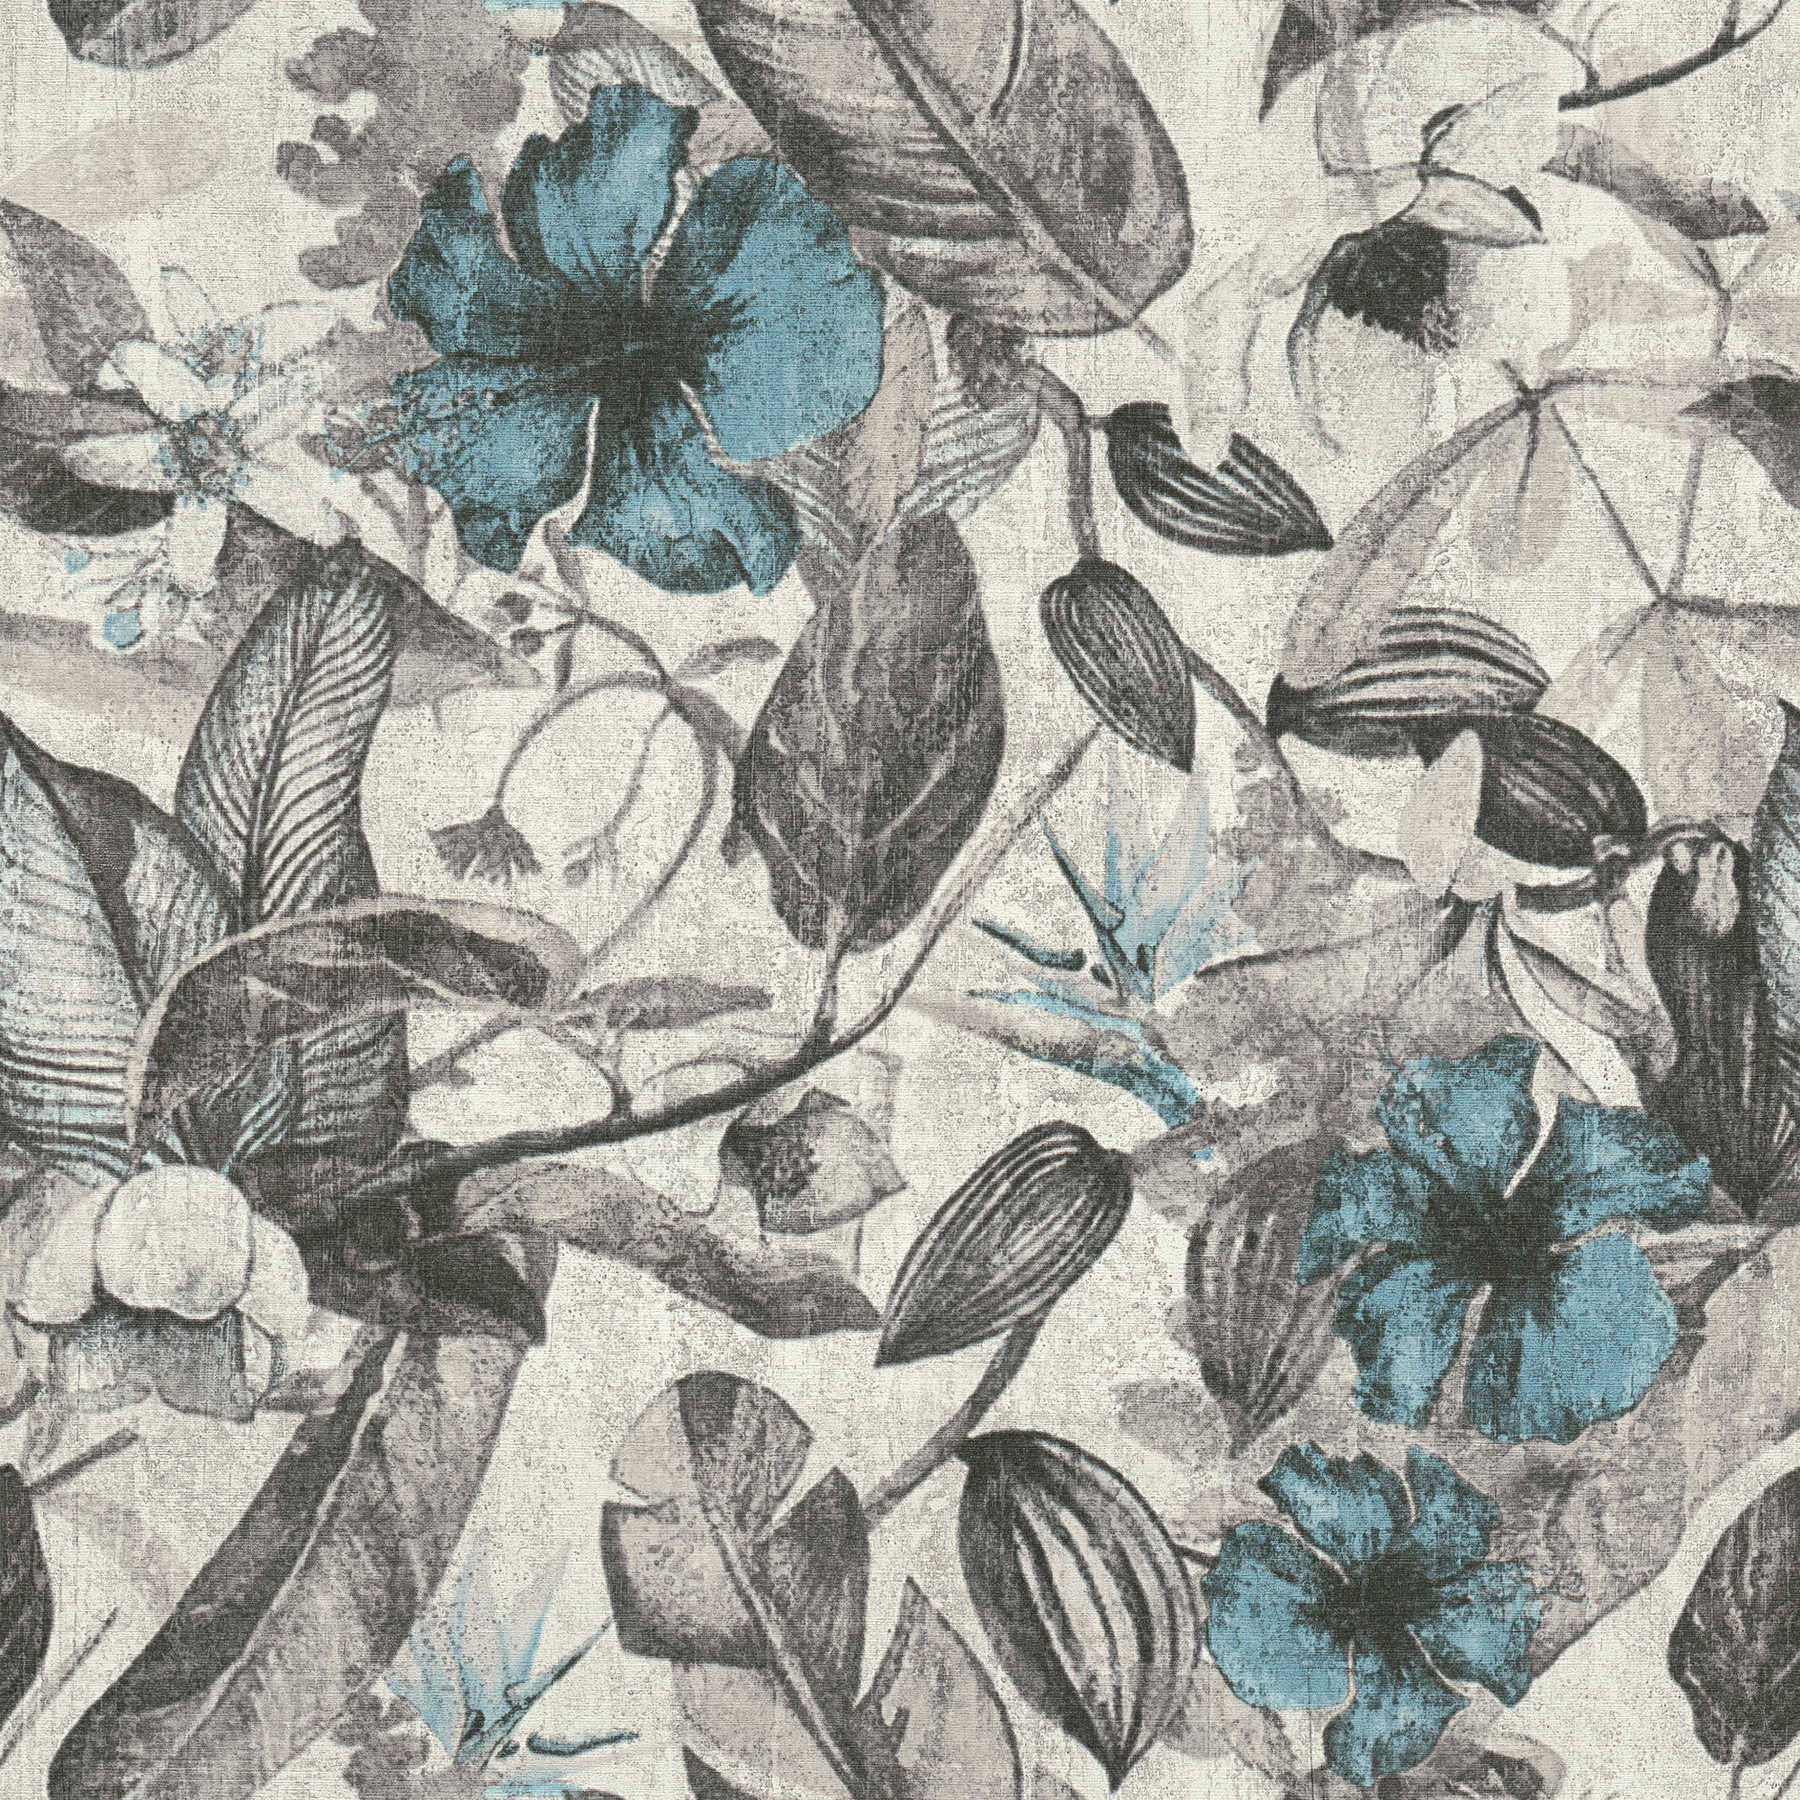 behang tropisch bloemenpatroon in textiellook - blauw, grijs, zwart
